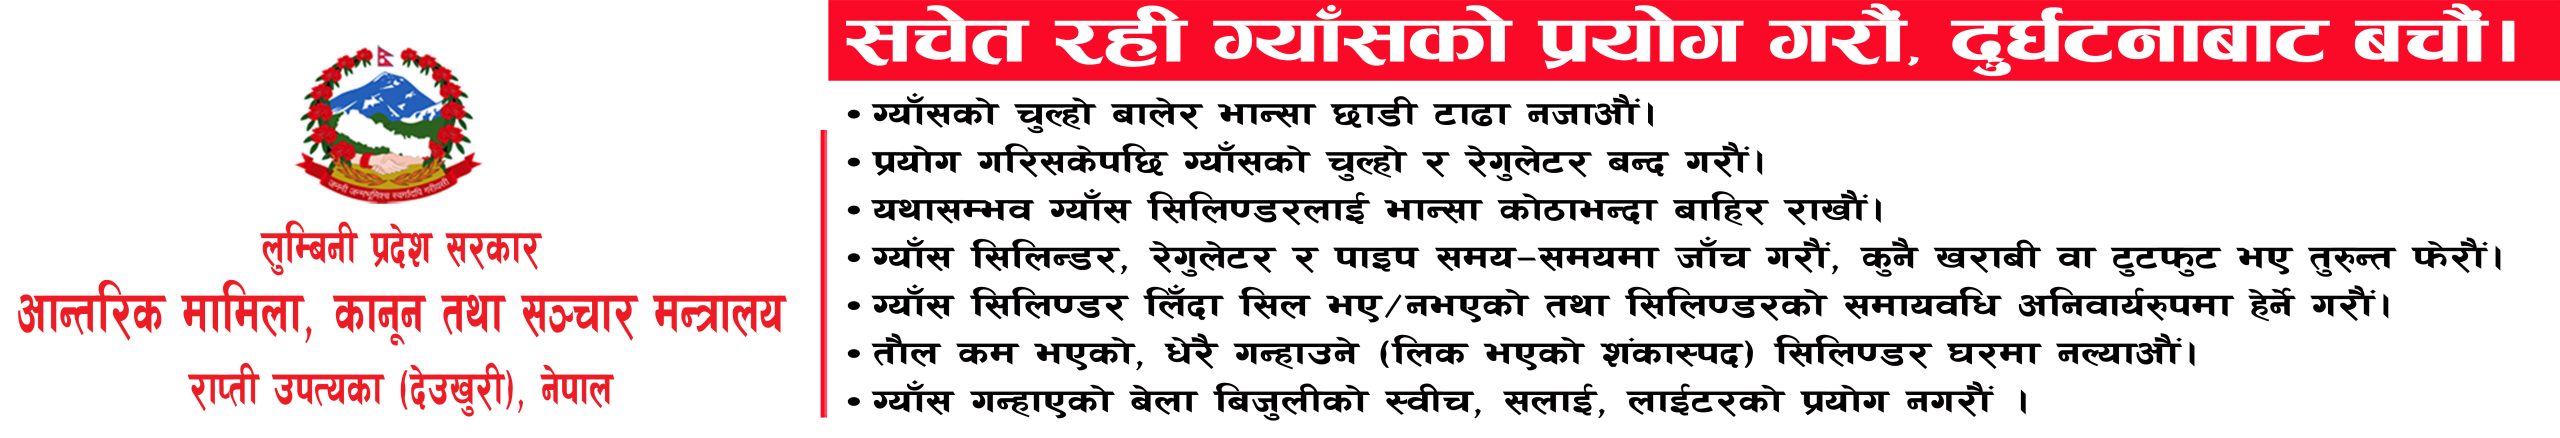 नेपाल राष्ट्रिय शिक्षक संगठन निस्दीको दोस्रो गाउँ परिषद सम्पन्न